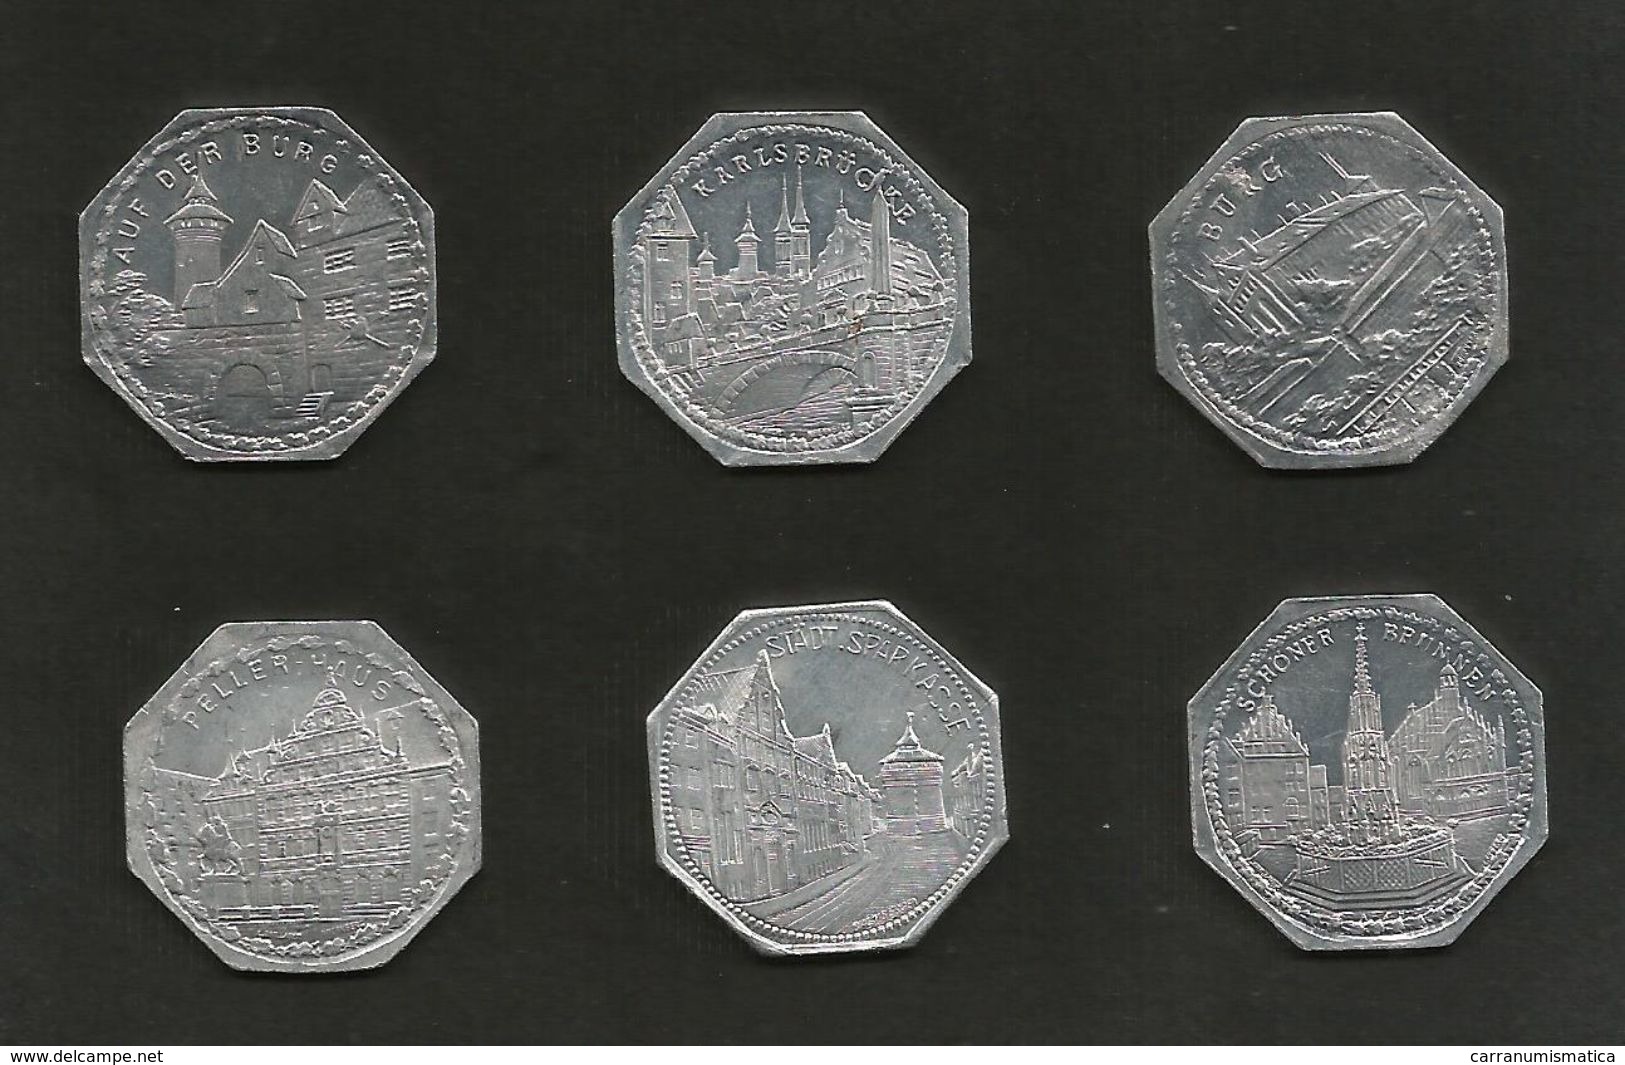 DEUTSCHLAND / GERMANY - NURNBERG STRASSENBAHN - 20 Pfennig (Monuments) - Lot Of 6 Tokens - Monetari/ Di Necessità